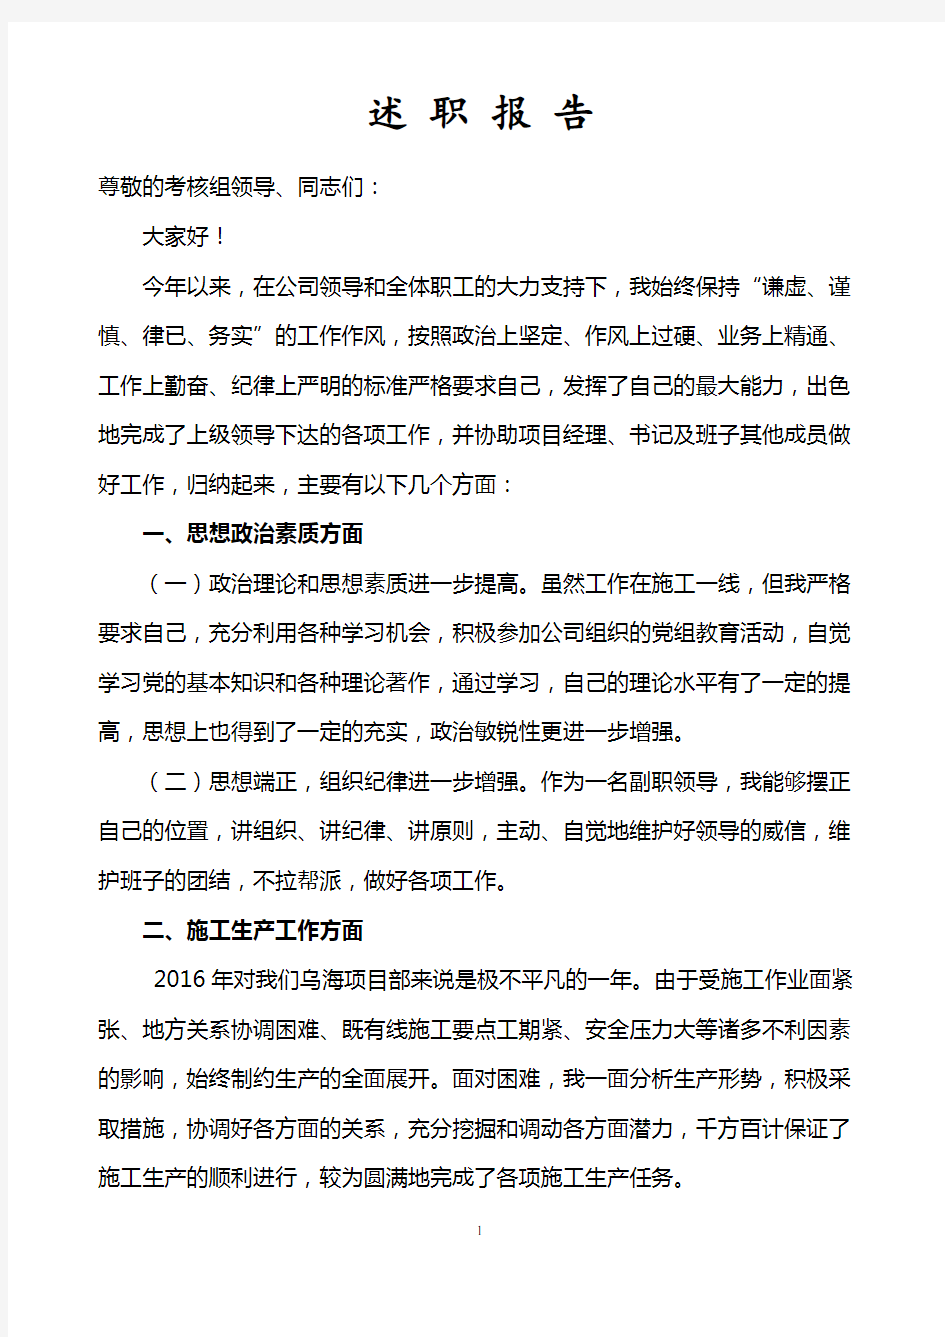 中铁项目副经理2017年述职报告